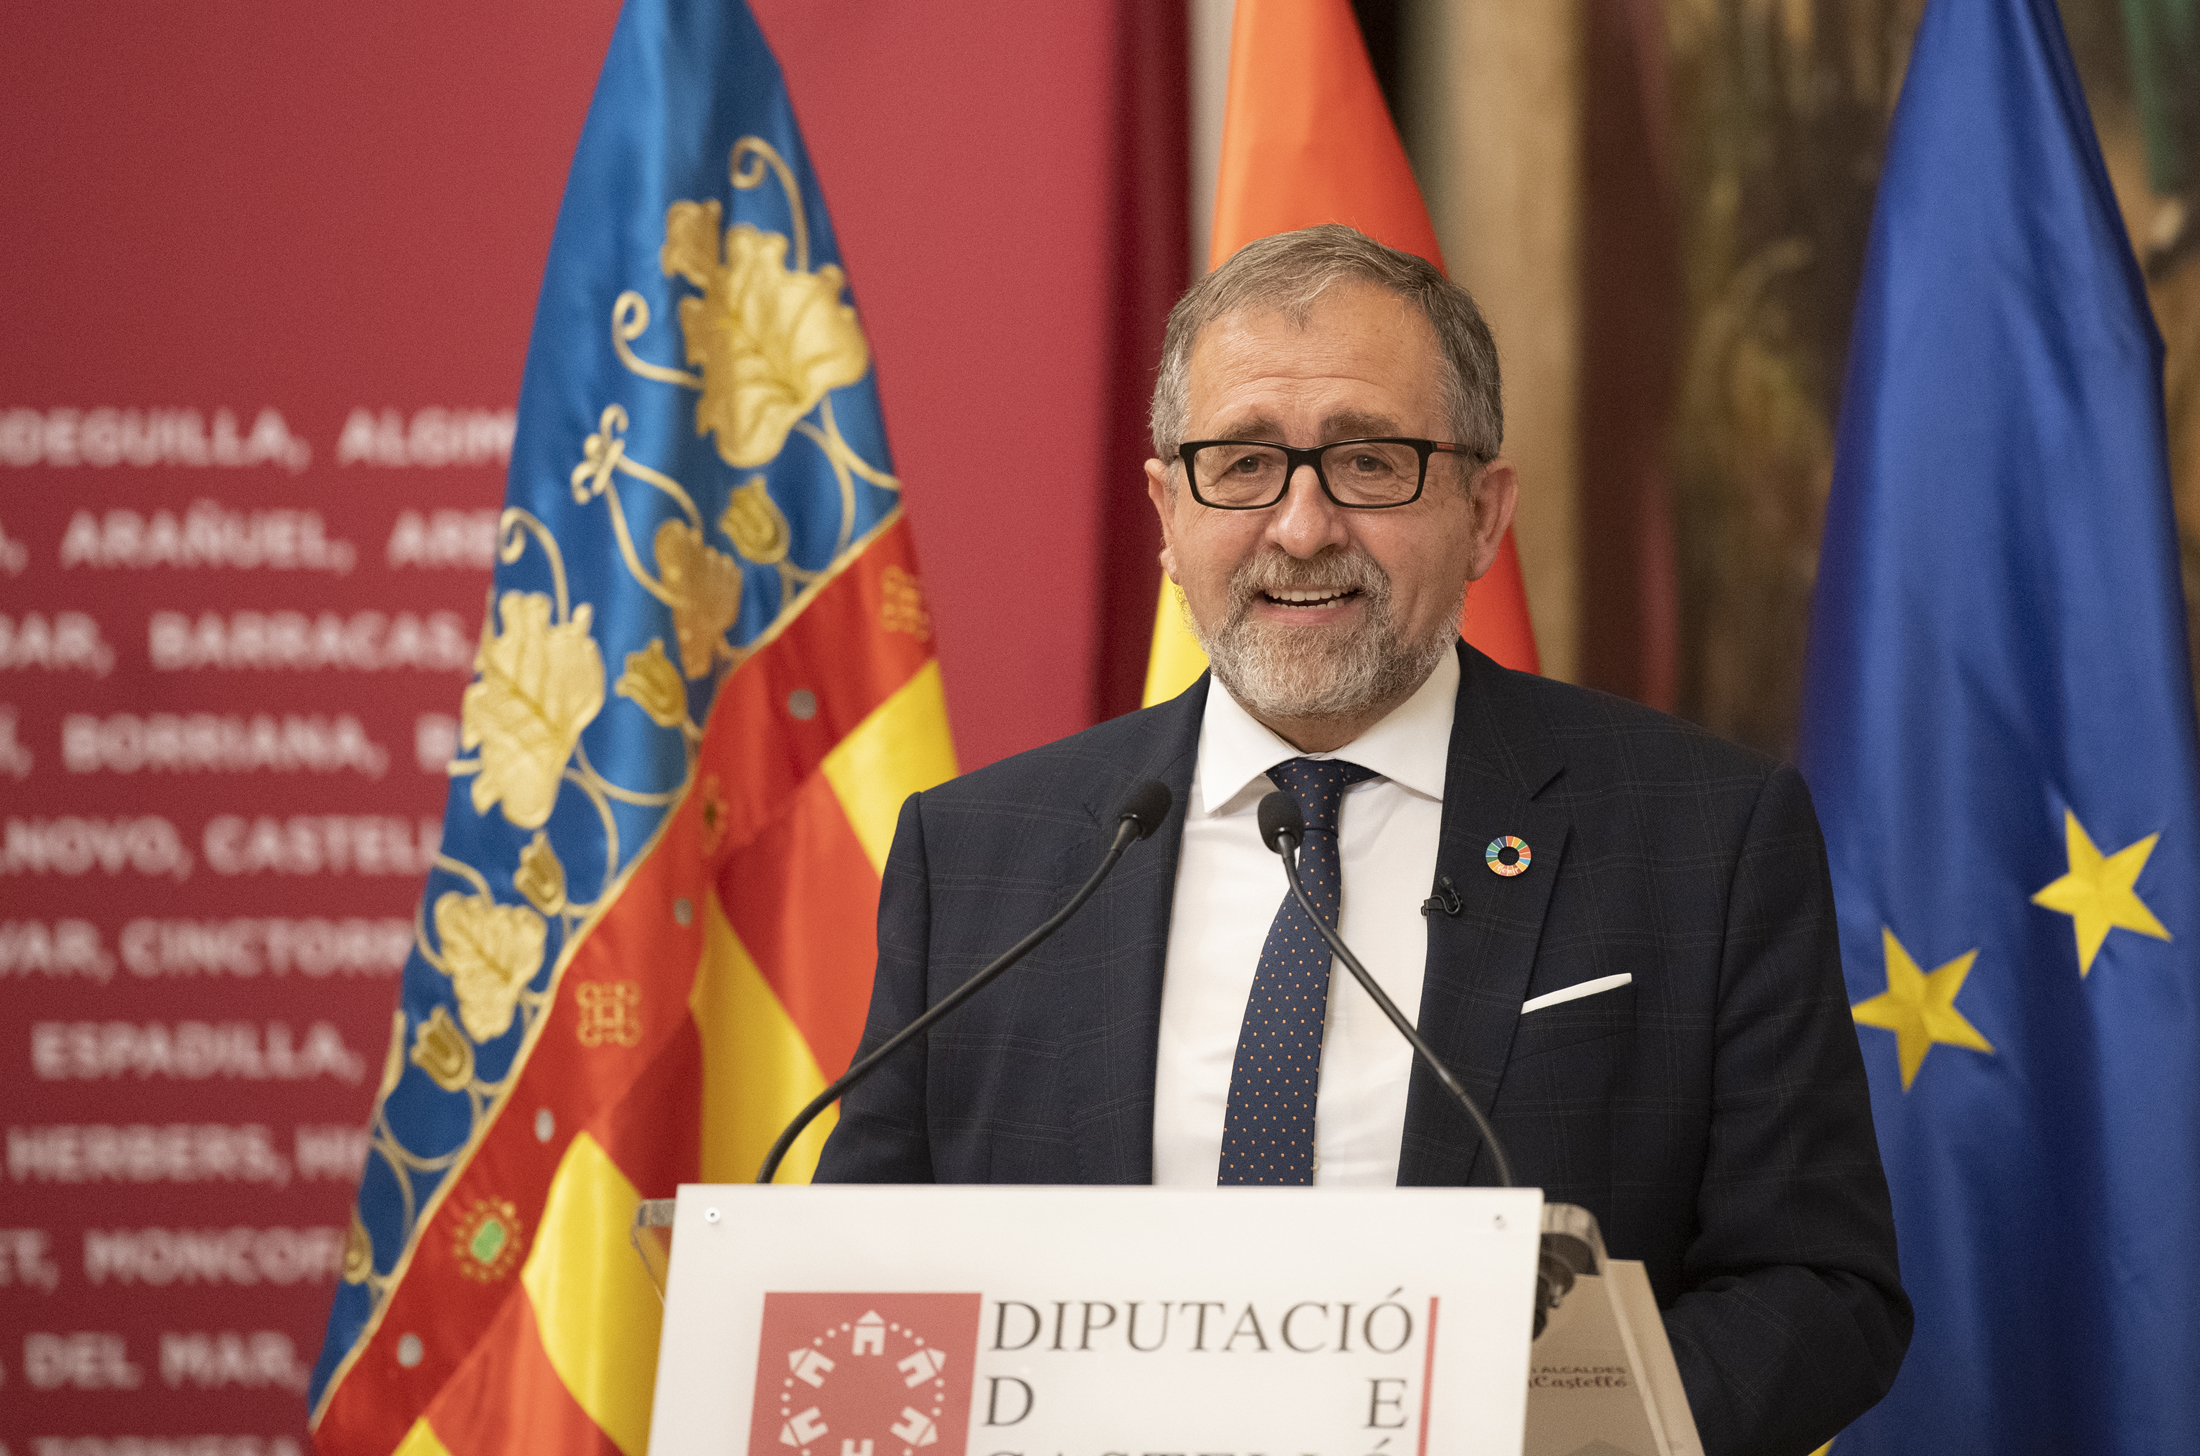 El presidente de la Diputación de Castellón guardará 10 días de confinamiento en su domicilio tras dar positivo en Covid